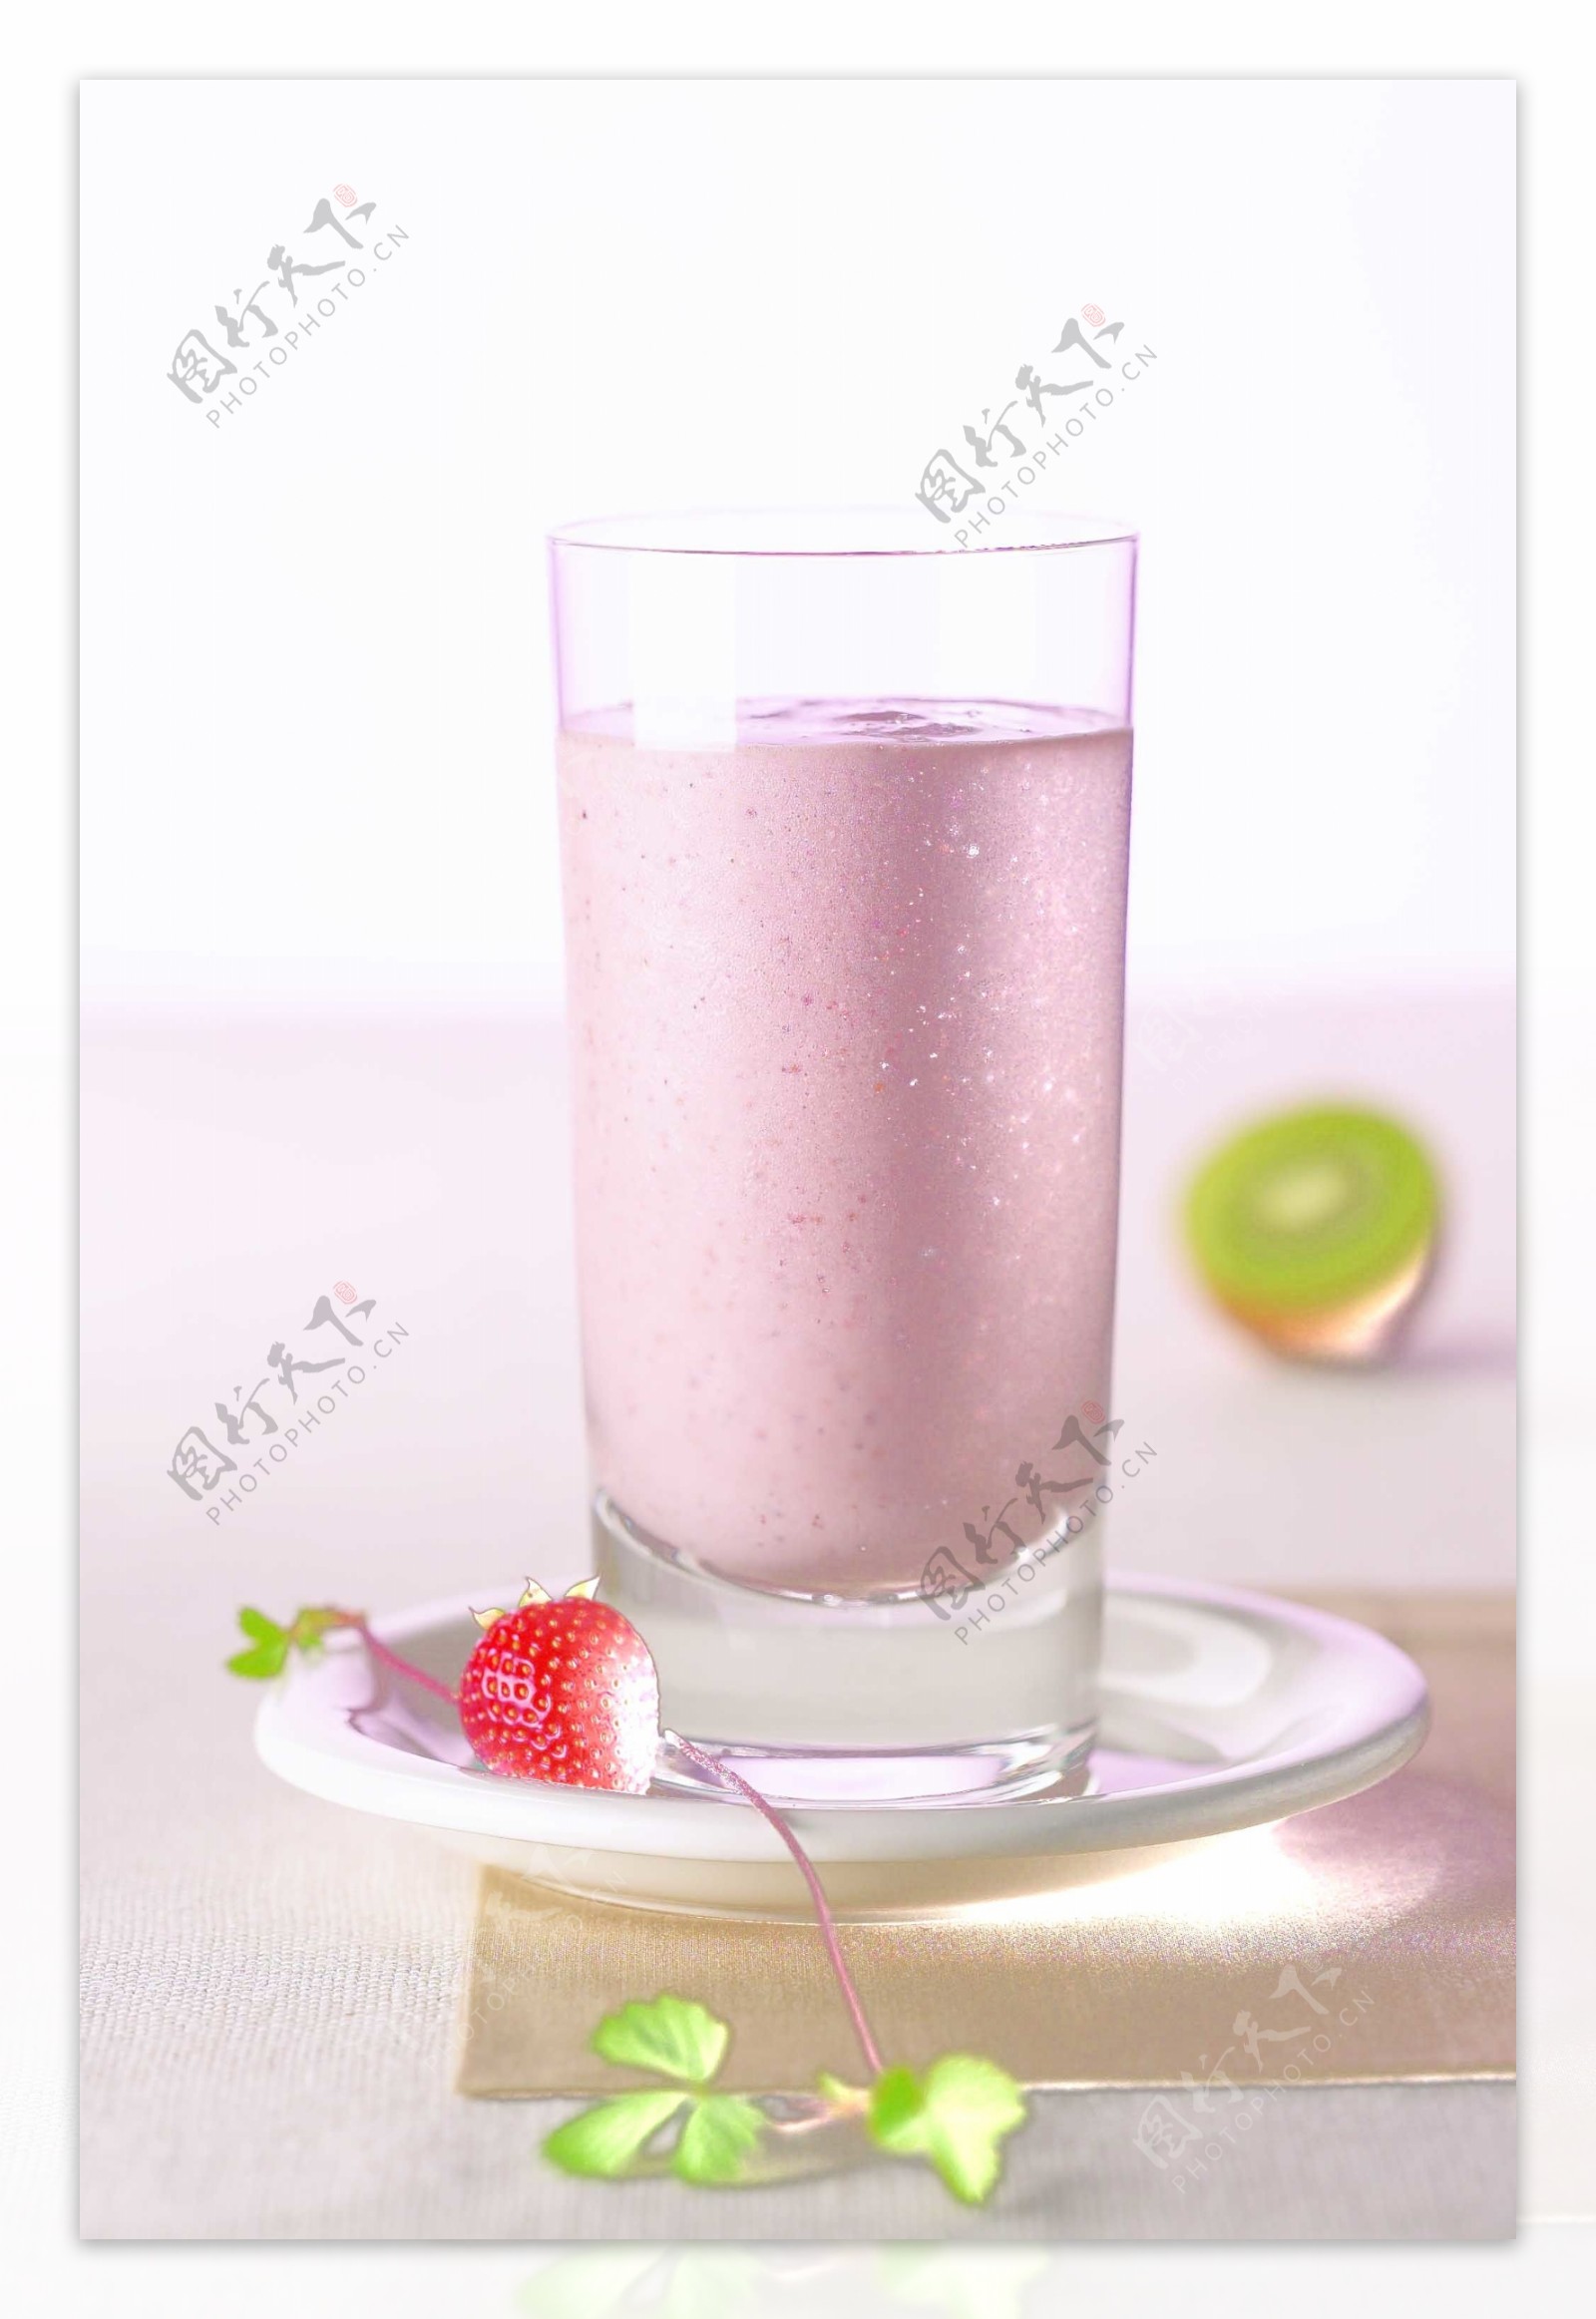 木桌上的草莓奶昔圖片素材-JPG圖片尺寸7506 × 5007px-高清圖案501731318-zh.lovepik.com